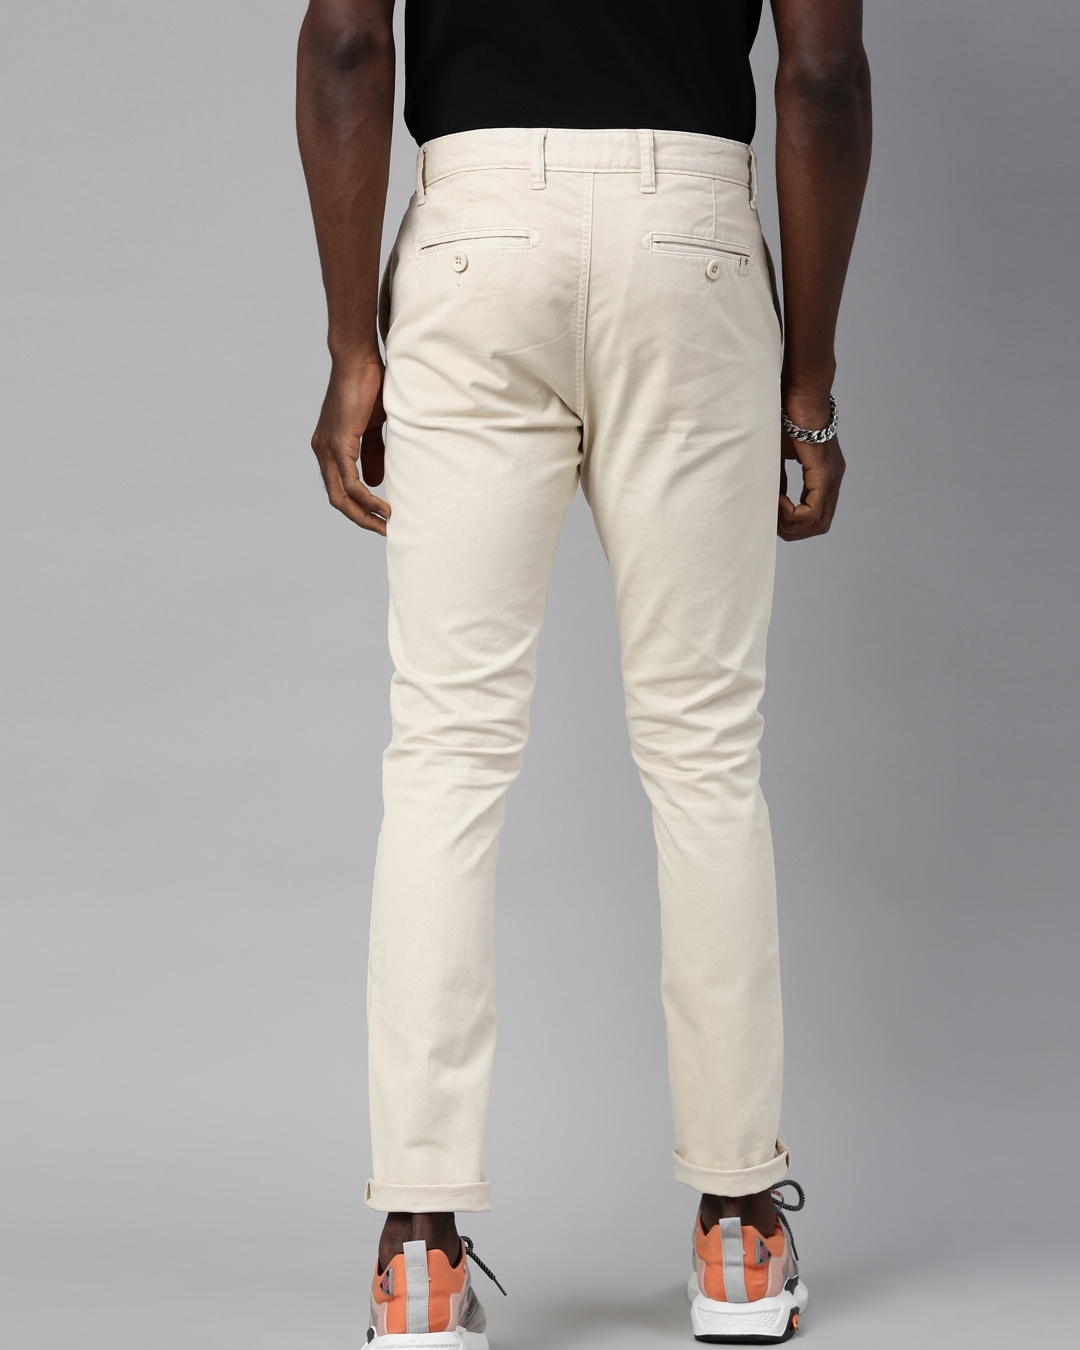 Buy Men's Beige Slim Fit Trousers for Men Beige Online at Bewakoof